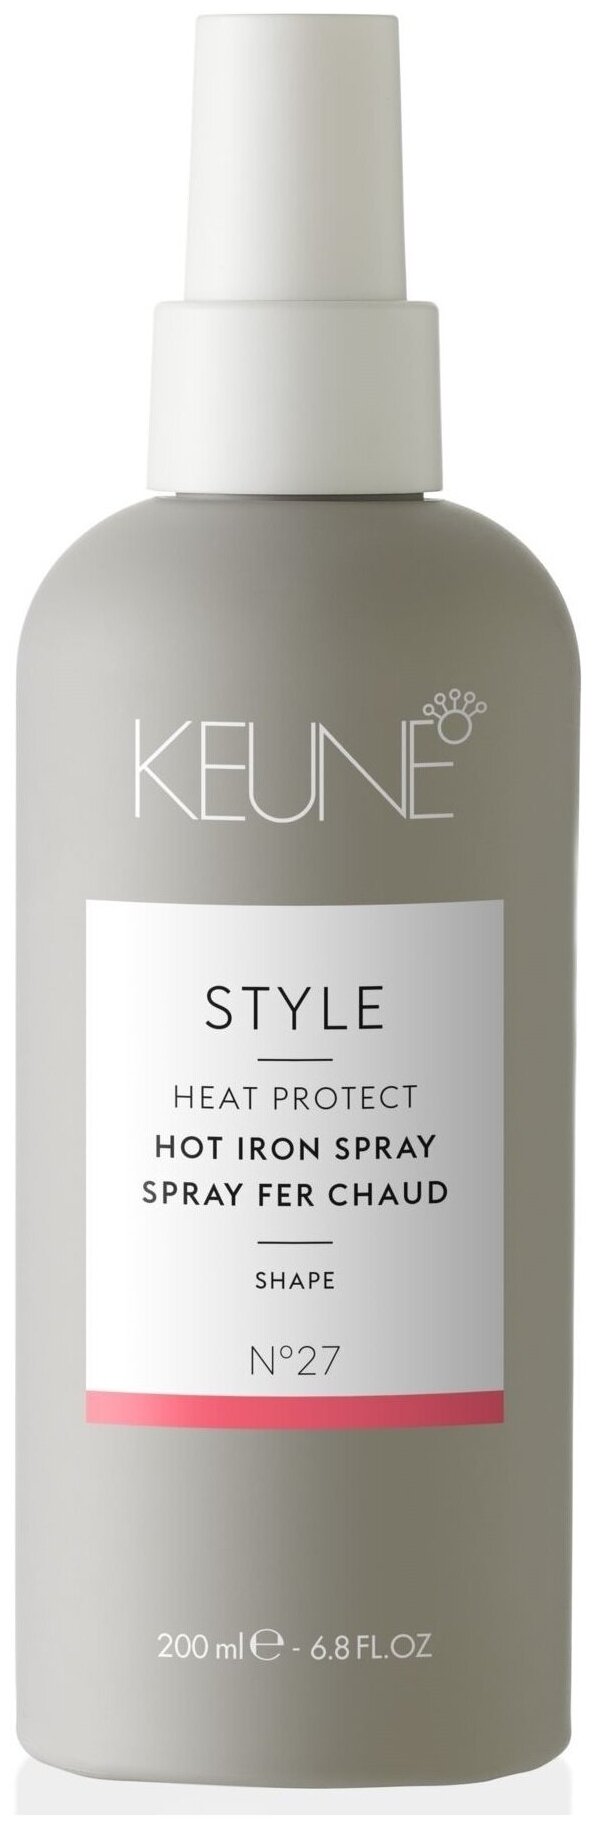 Keune Спрей для укладки утюжками Style Hot Iron, 200 мл